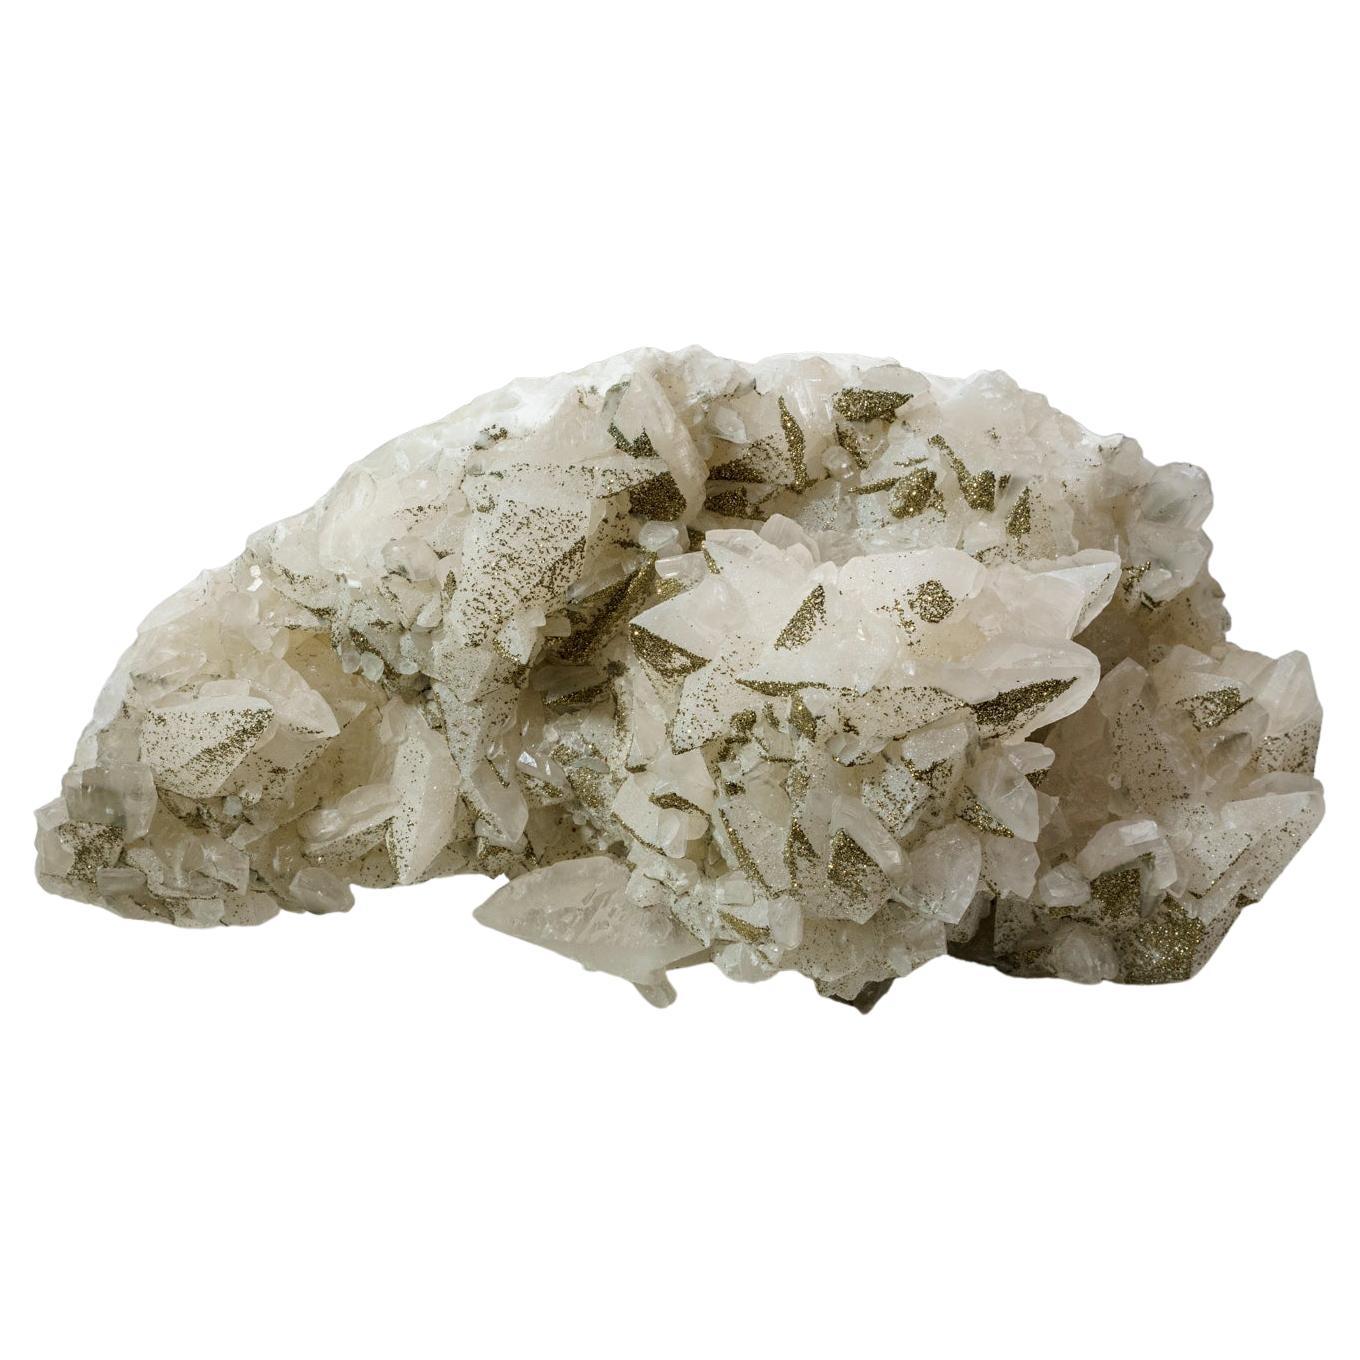 Chalcopyrite naturelle authentique en minéraux naturels sur cristaux de calcite de Chine en vente